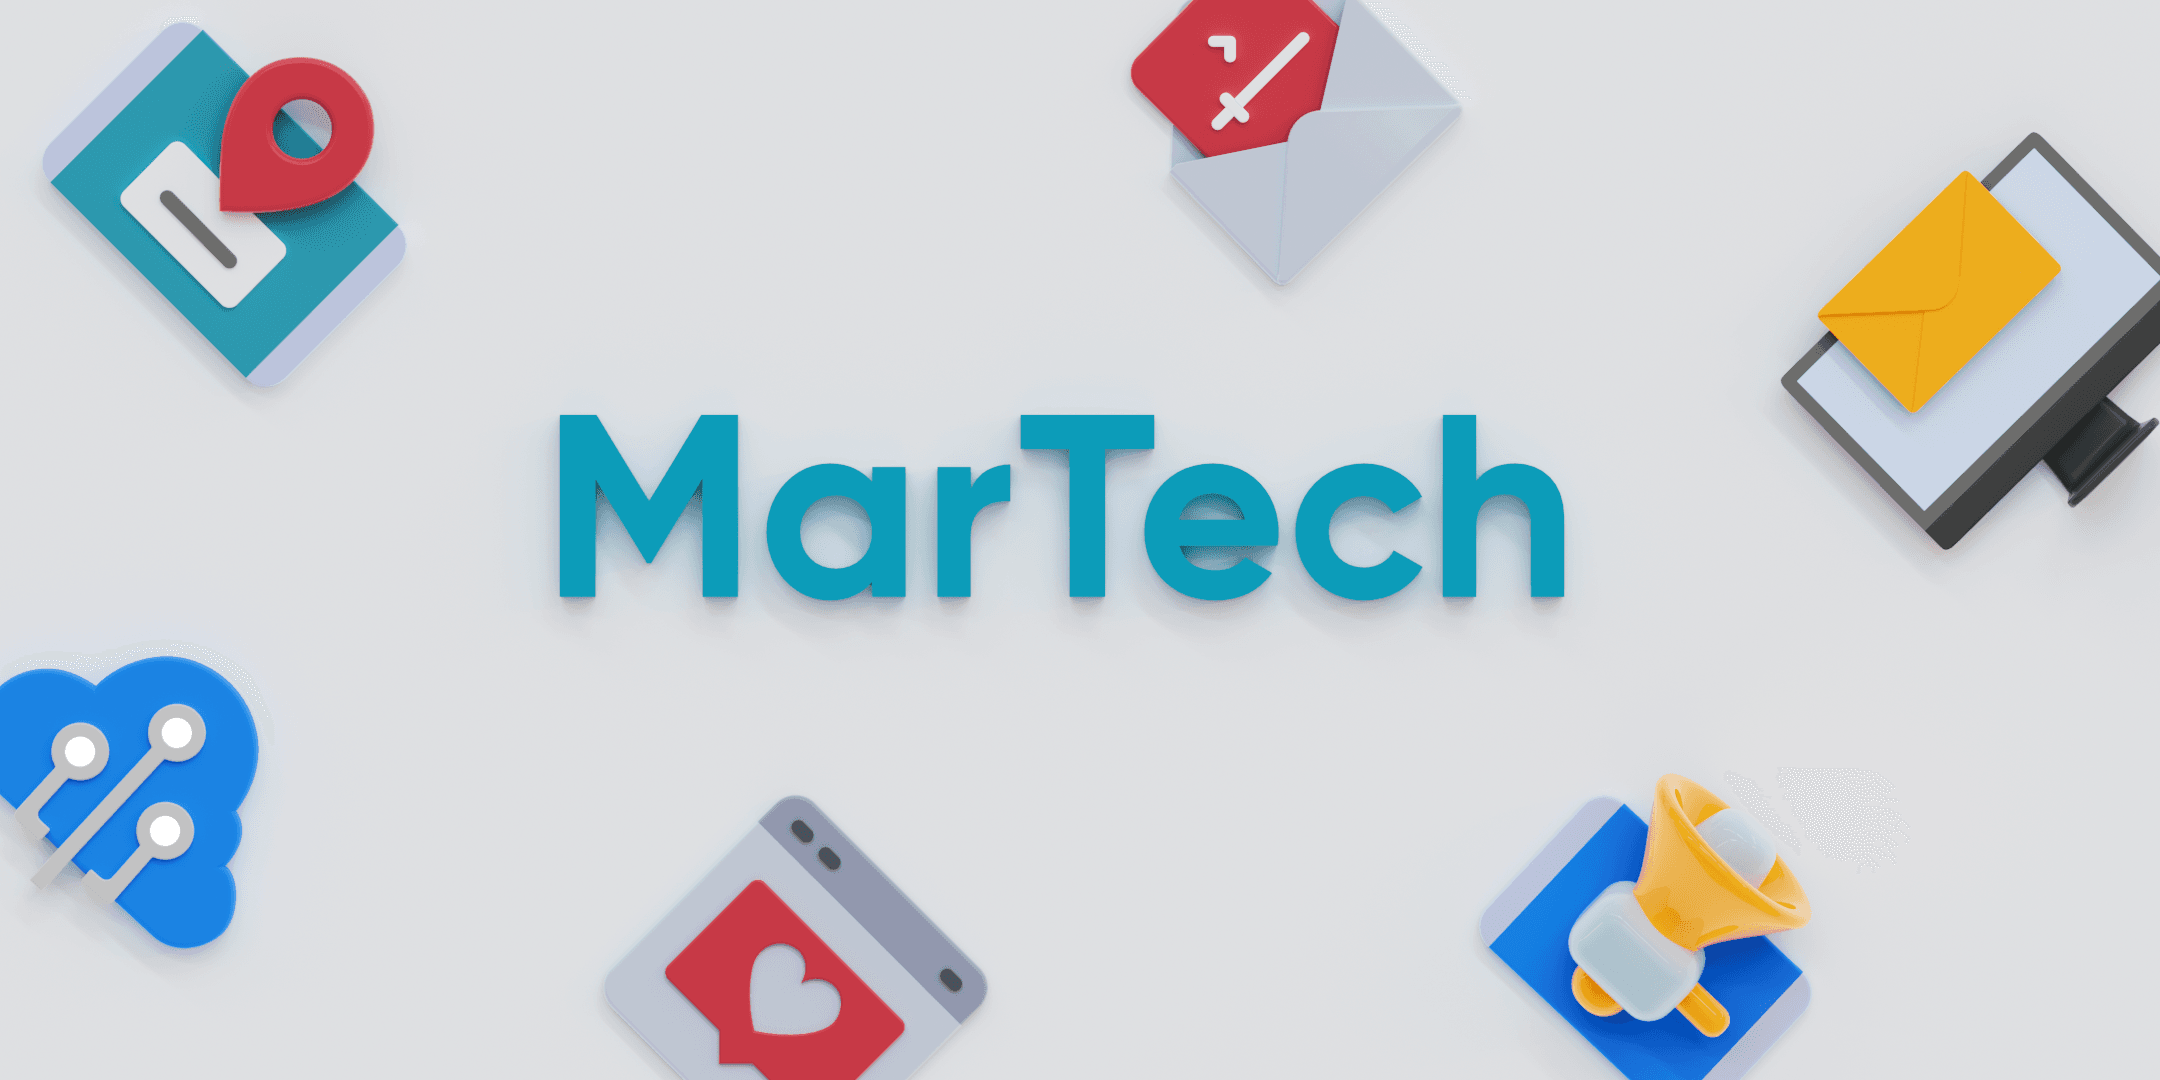 تکنولوژی بازاریابی (MarTech) چیست و چگونه به رشد کسب و کارها کمک می کند؟